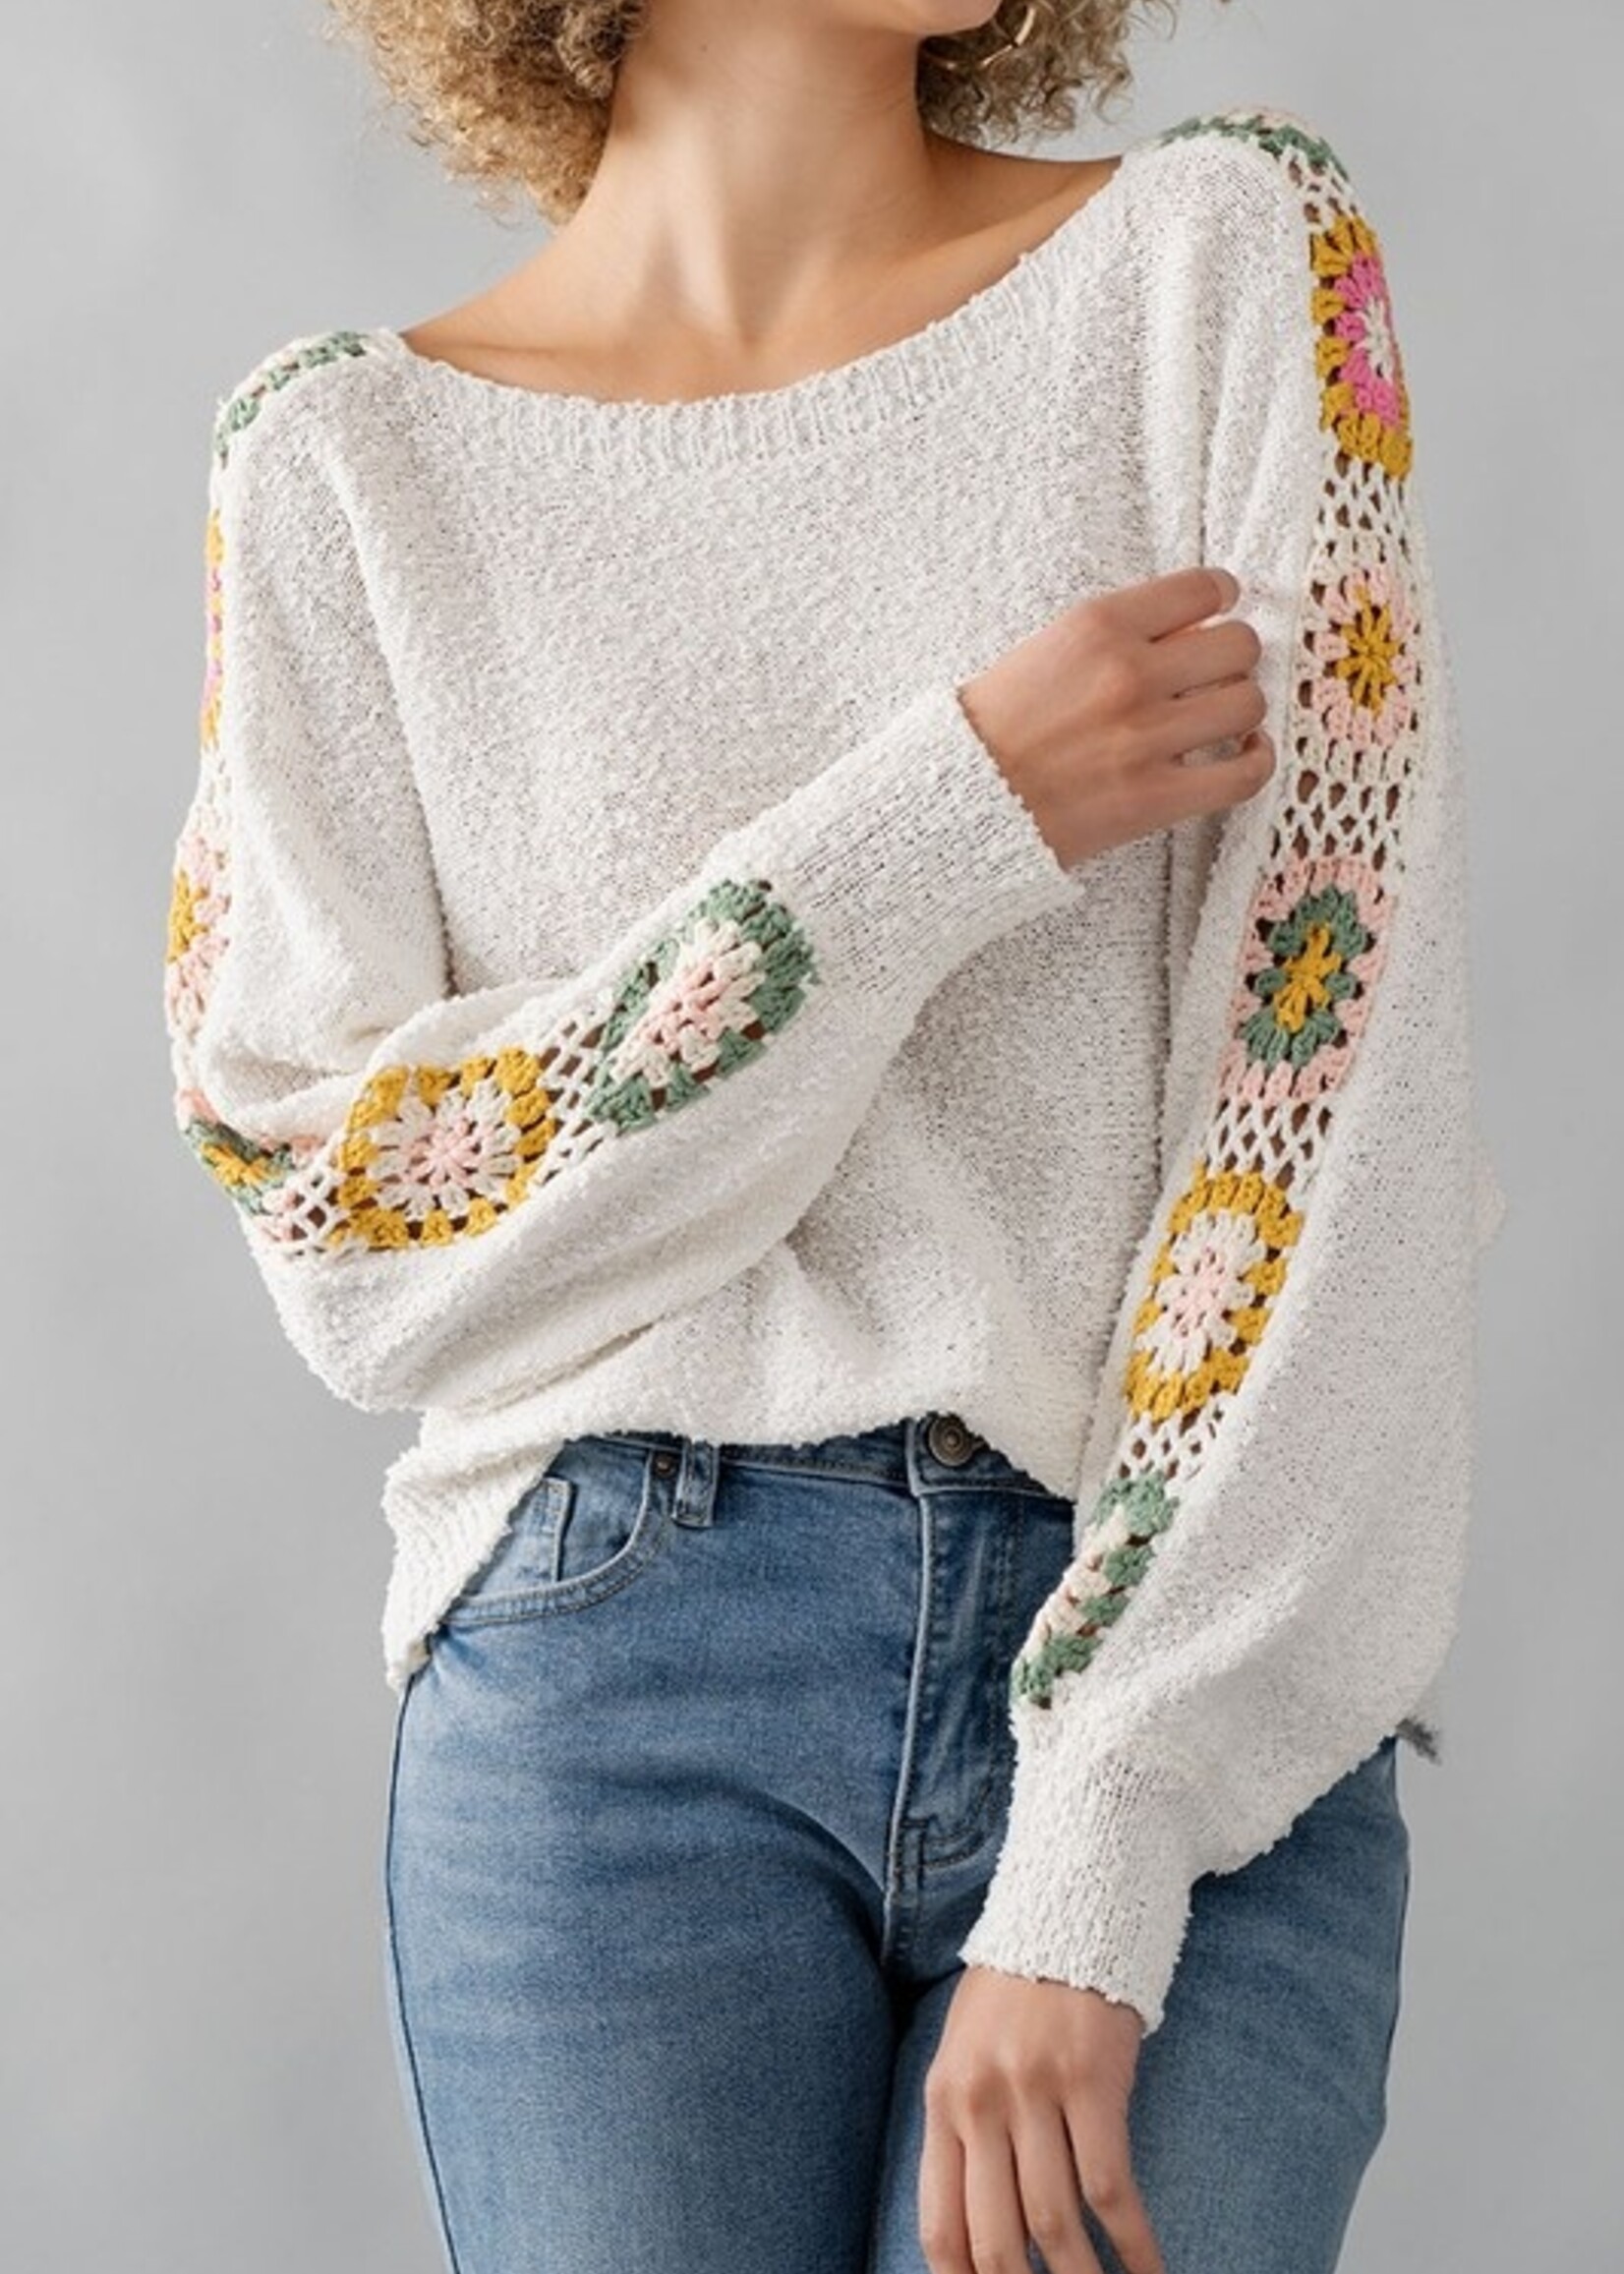 Crochet sleeve knit top